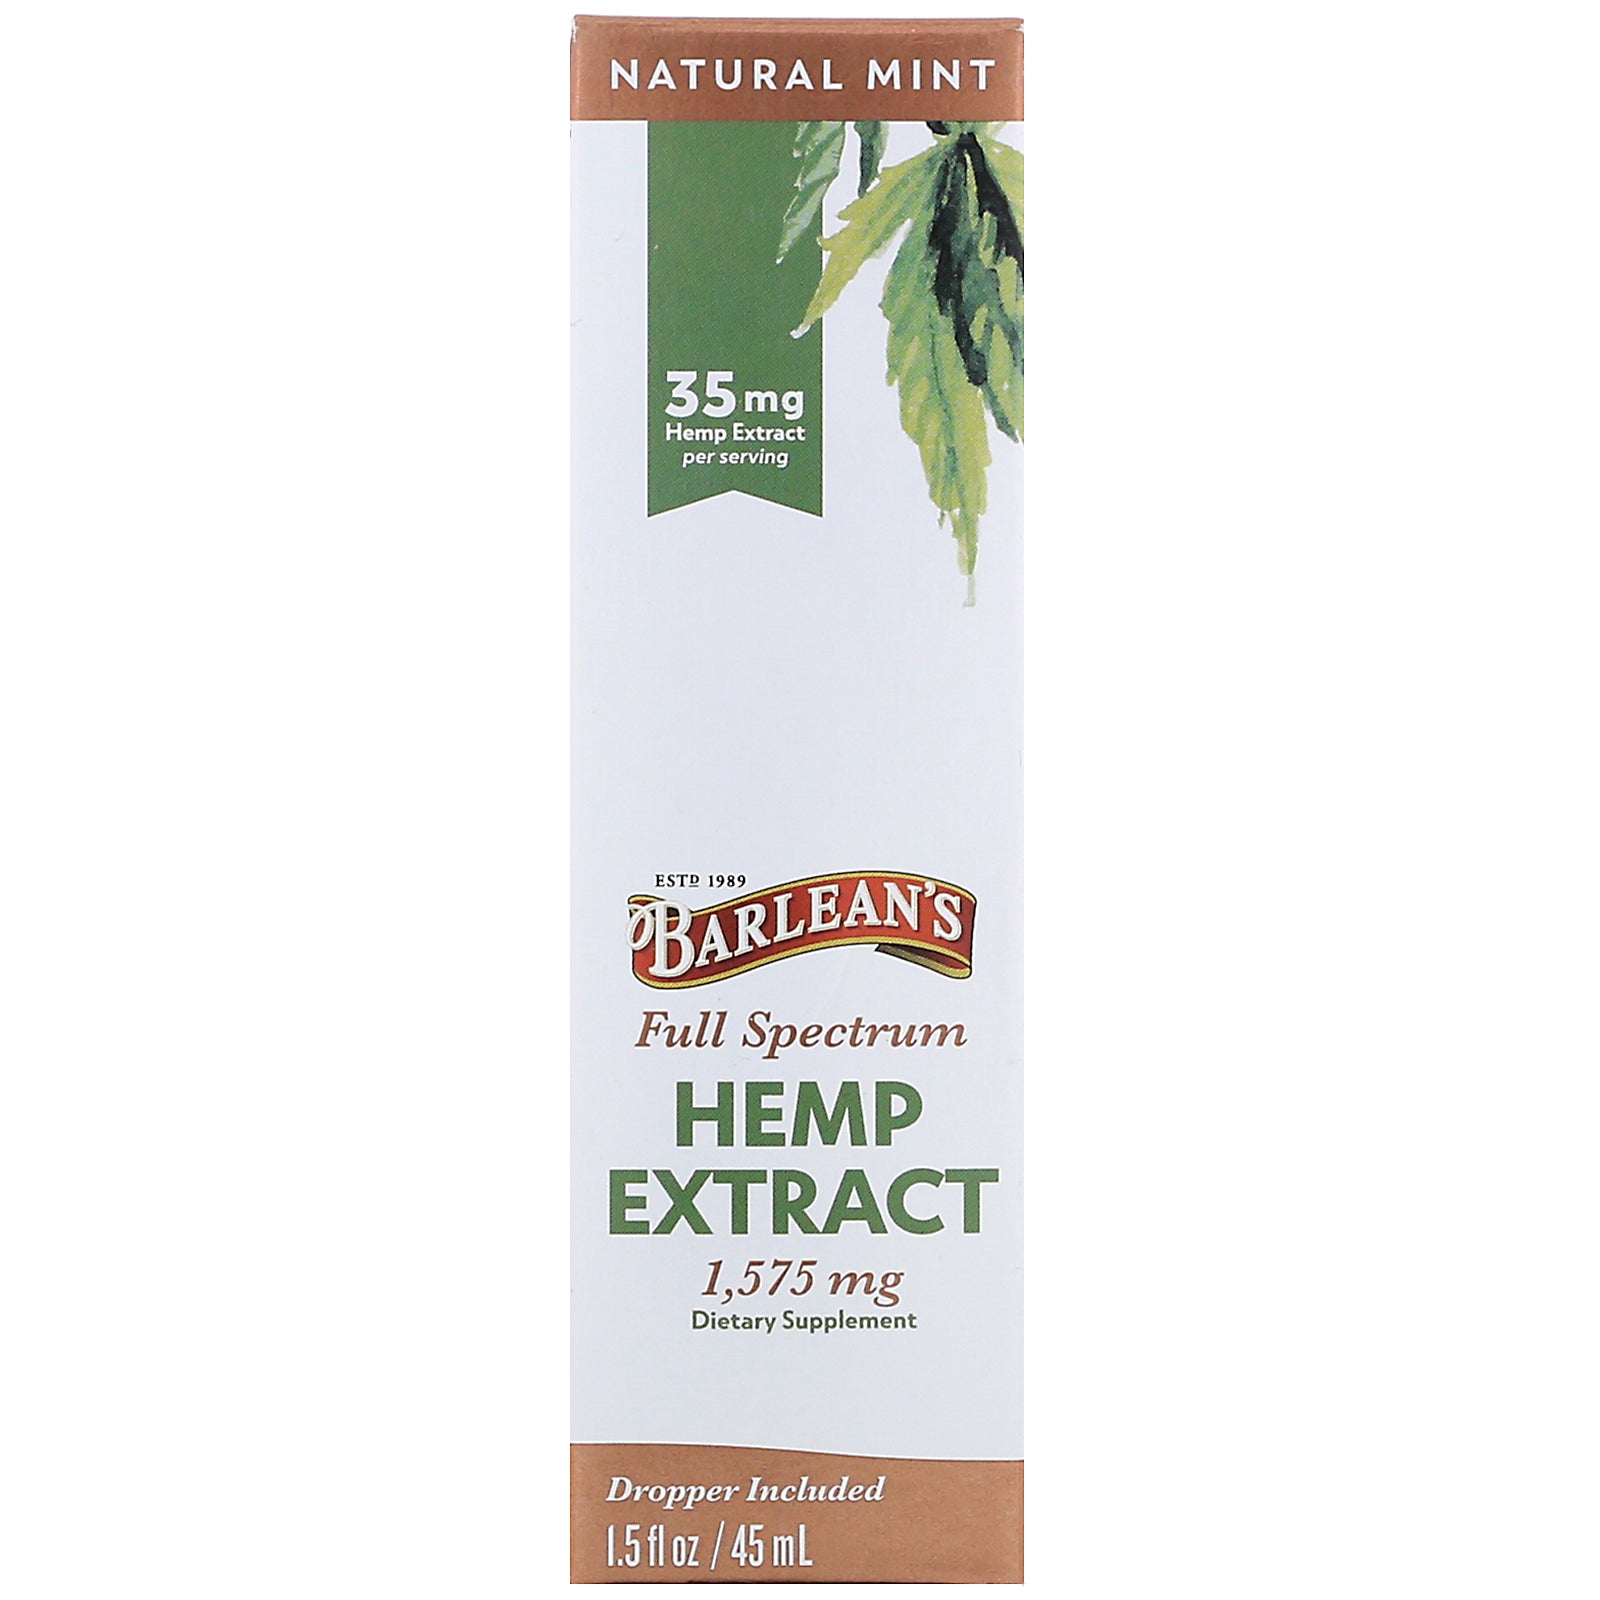 Barlean's, Full Spectrum Hemp Extract, Natural Mint, 35 mg, 1.5 fl oz (45 ml)